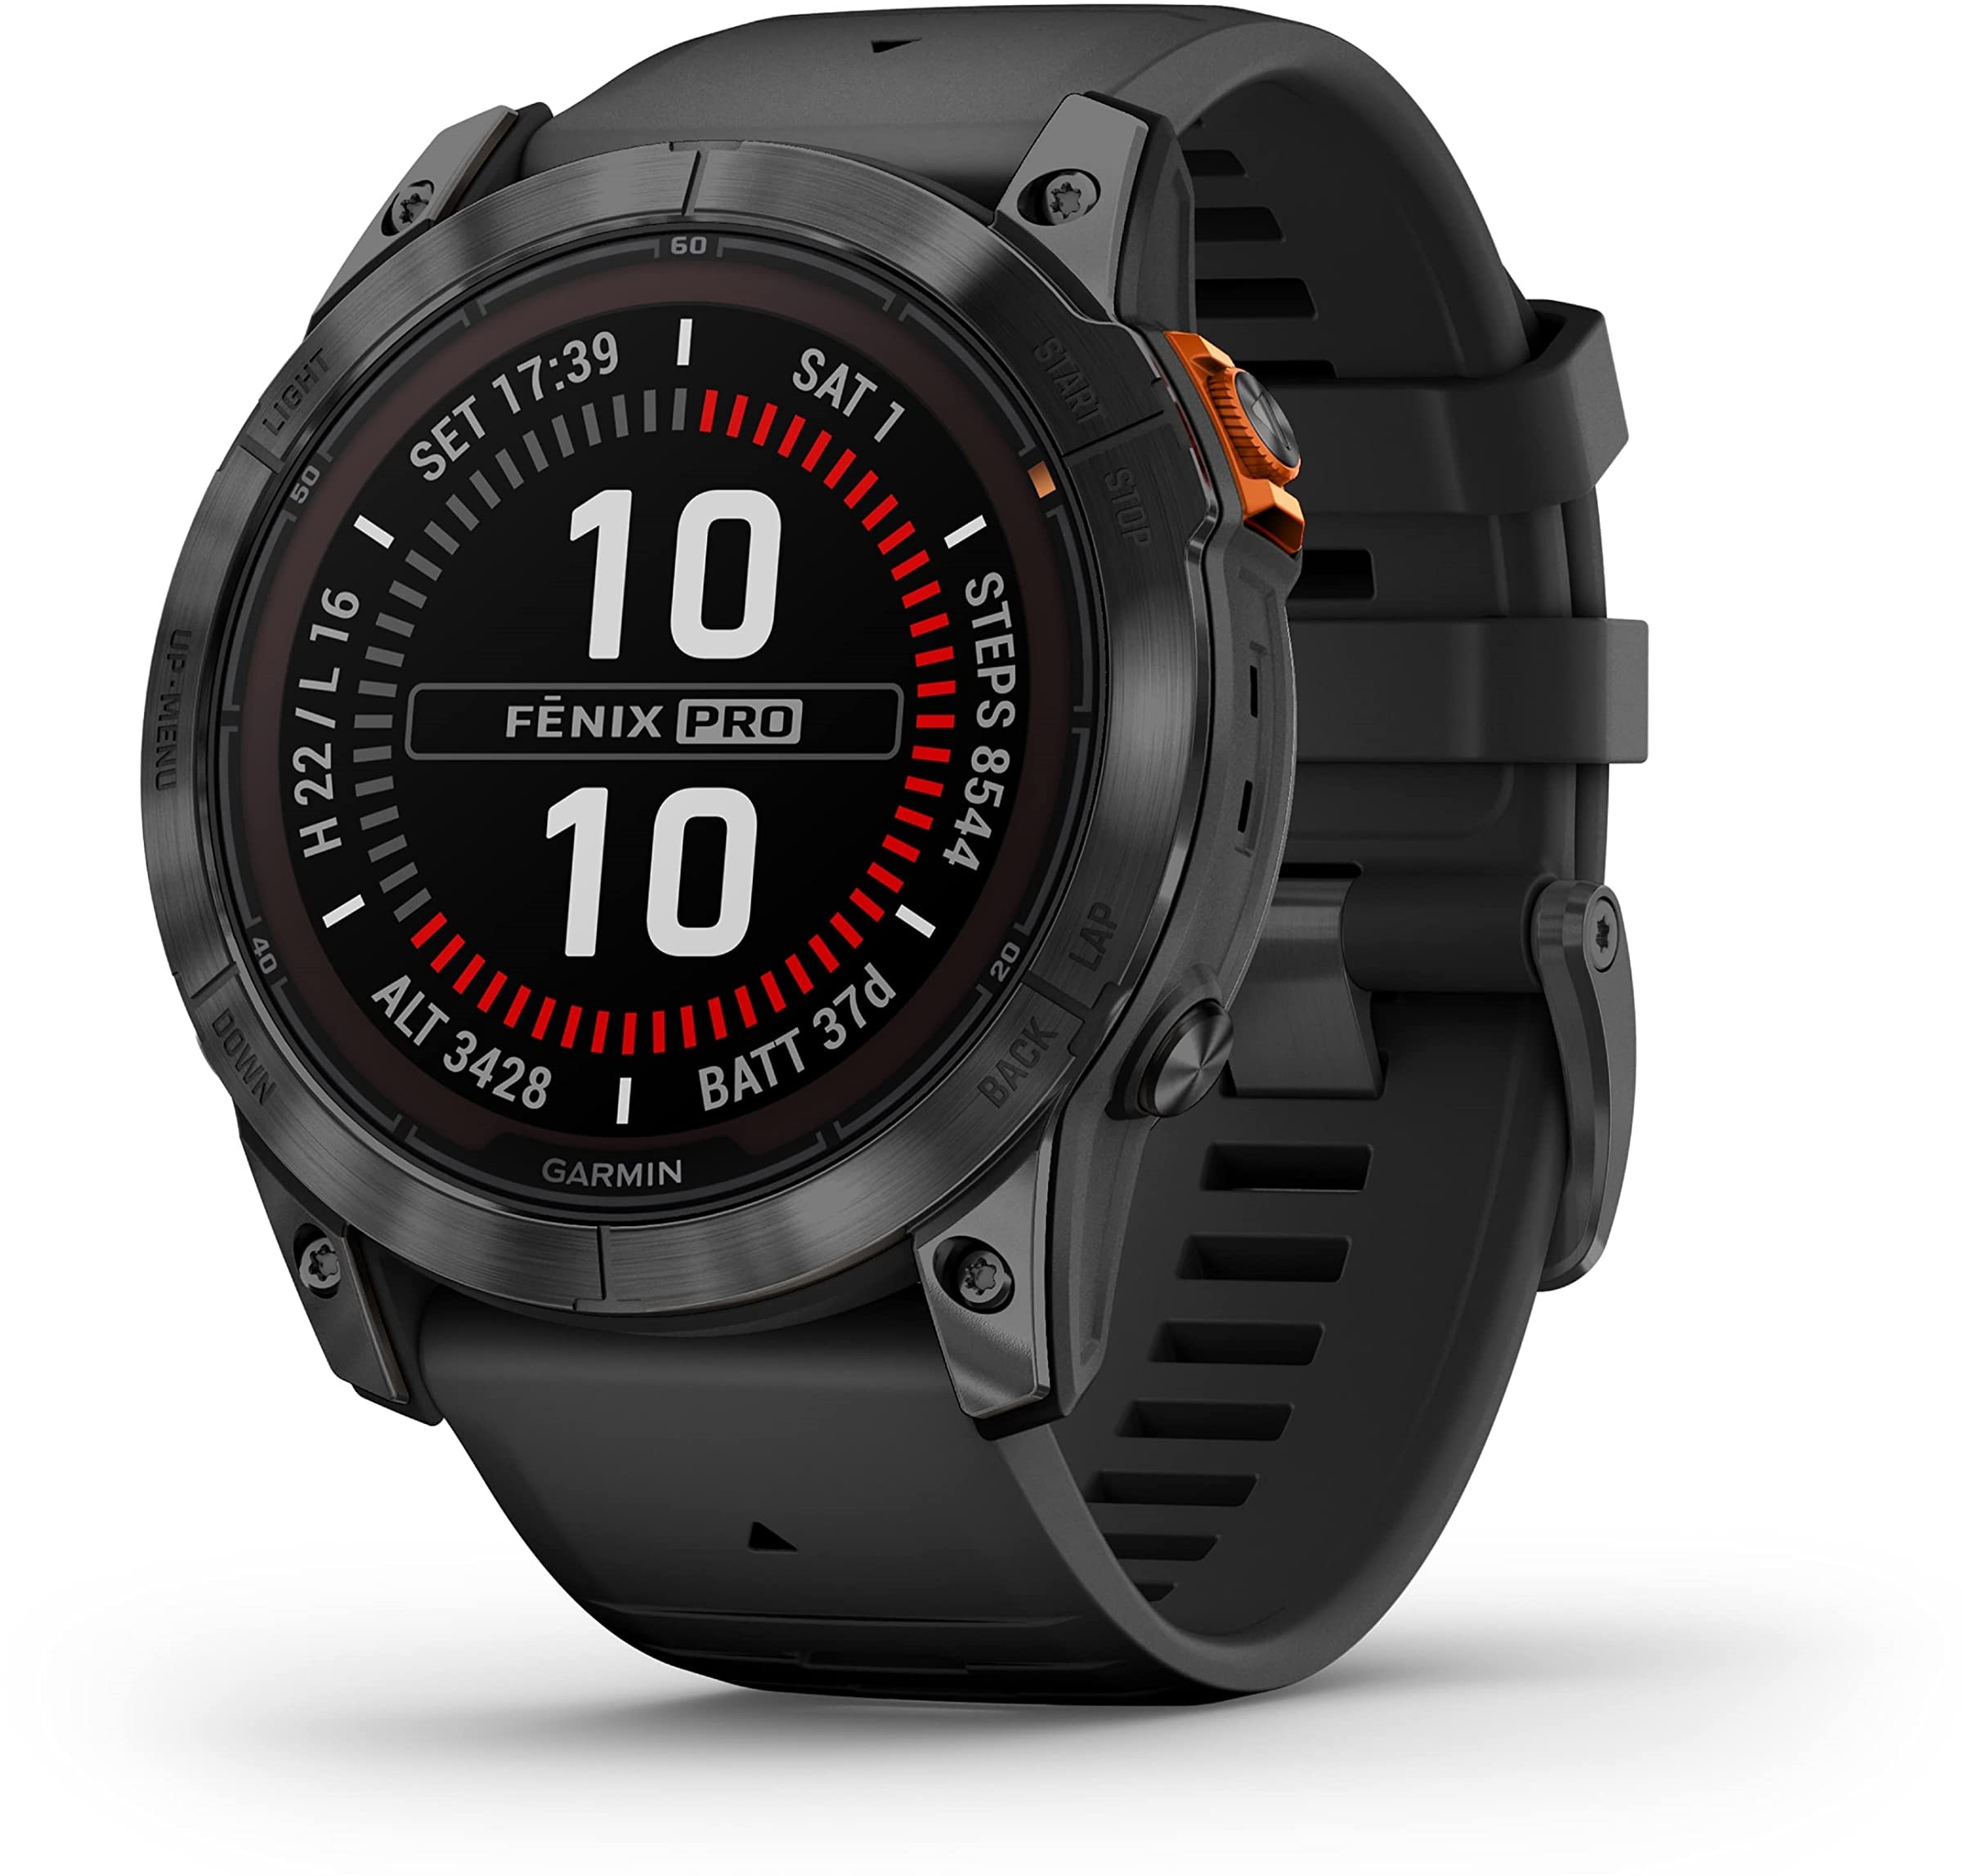 Garmin fēnix 7 Pro – GPS-Multisport-Smartwatch mit Farbdisplay und Touch-/Tastenbedienung, TOPO-Karten, über 60 vorinstallierte Sport-Apps, Garmin Music und Garmin Pay. Verschiedene Varianten